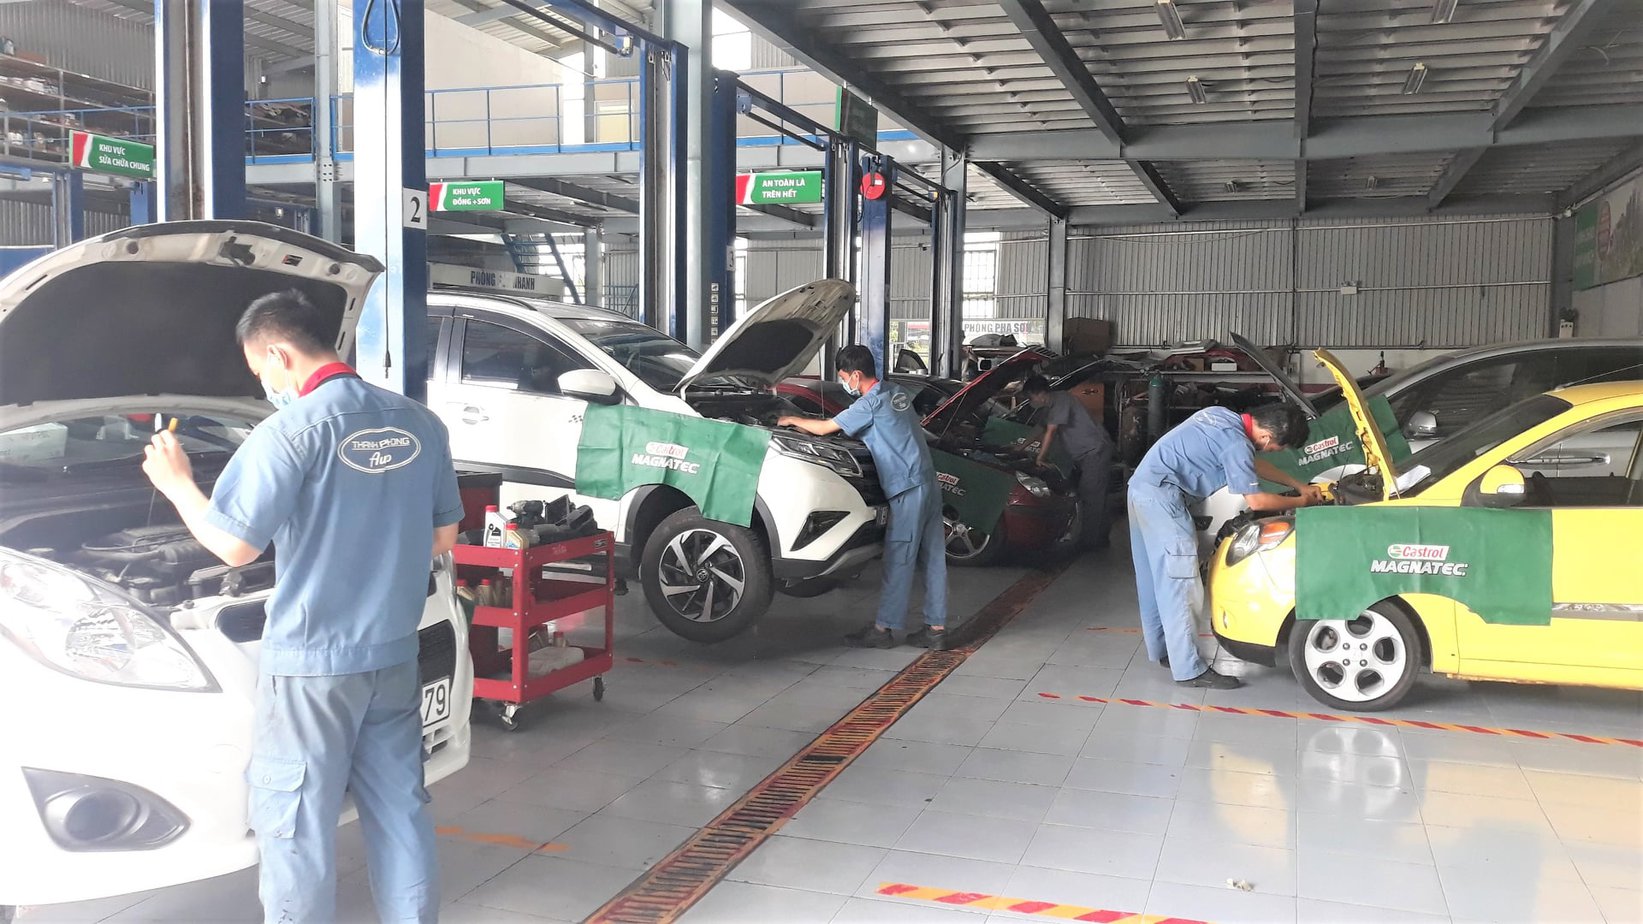 Báo Giá Dịch Vụ Sơn Xe Ô Tô Toyota Uy Tín, Chất Lượng Tại TPHCM cao cấp Garage Thanh Phong Auto HCM 2023